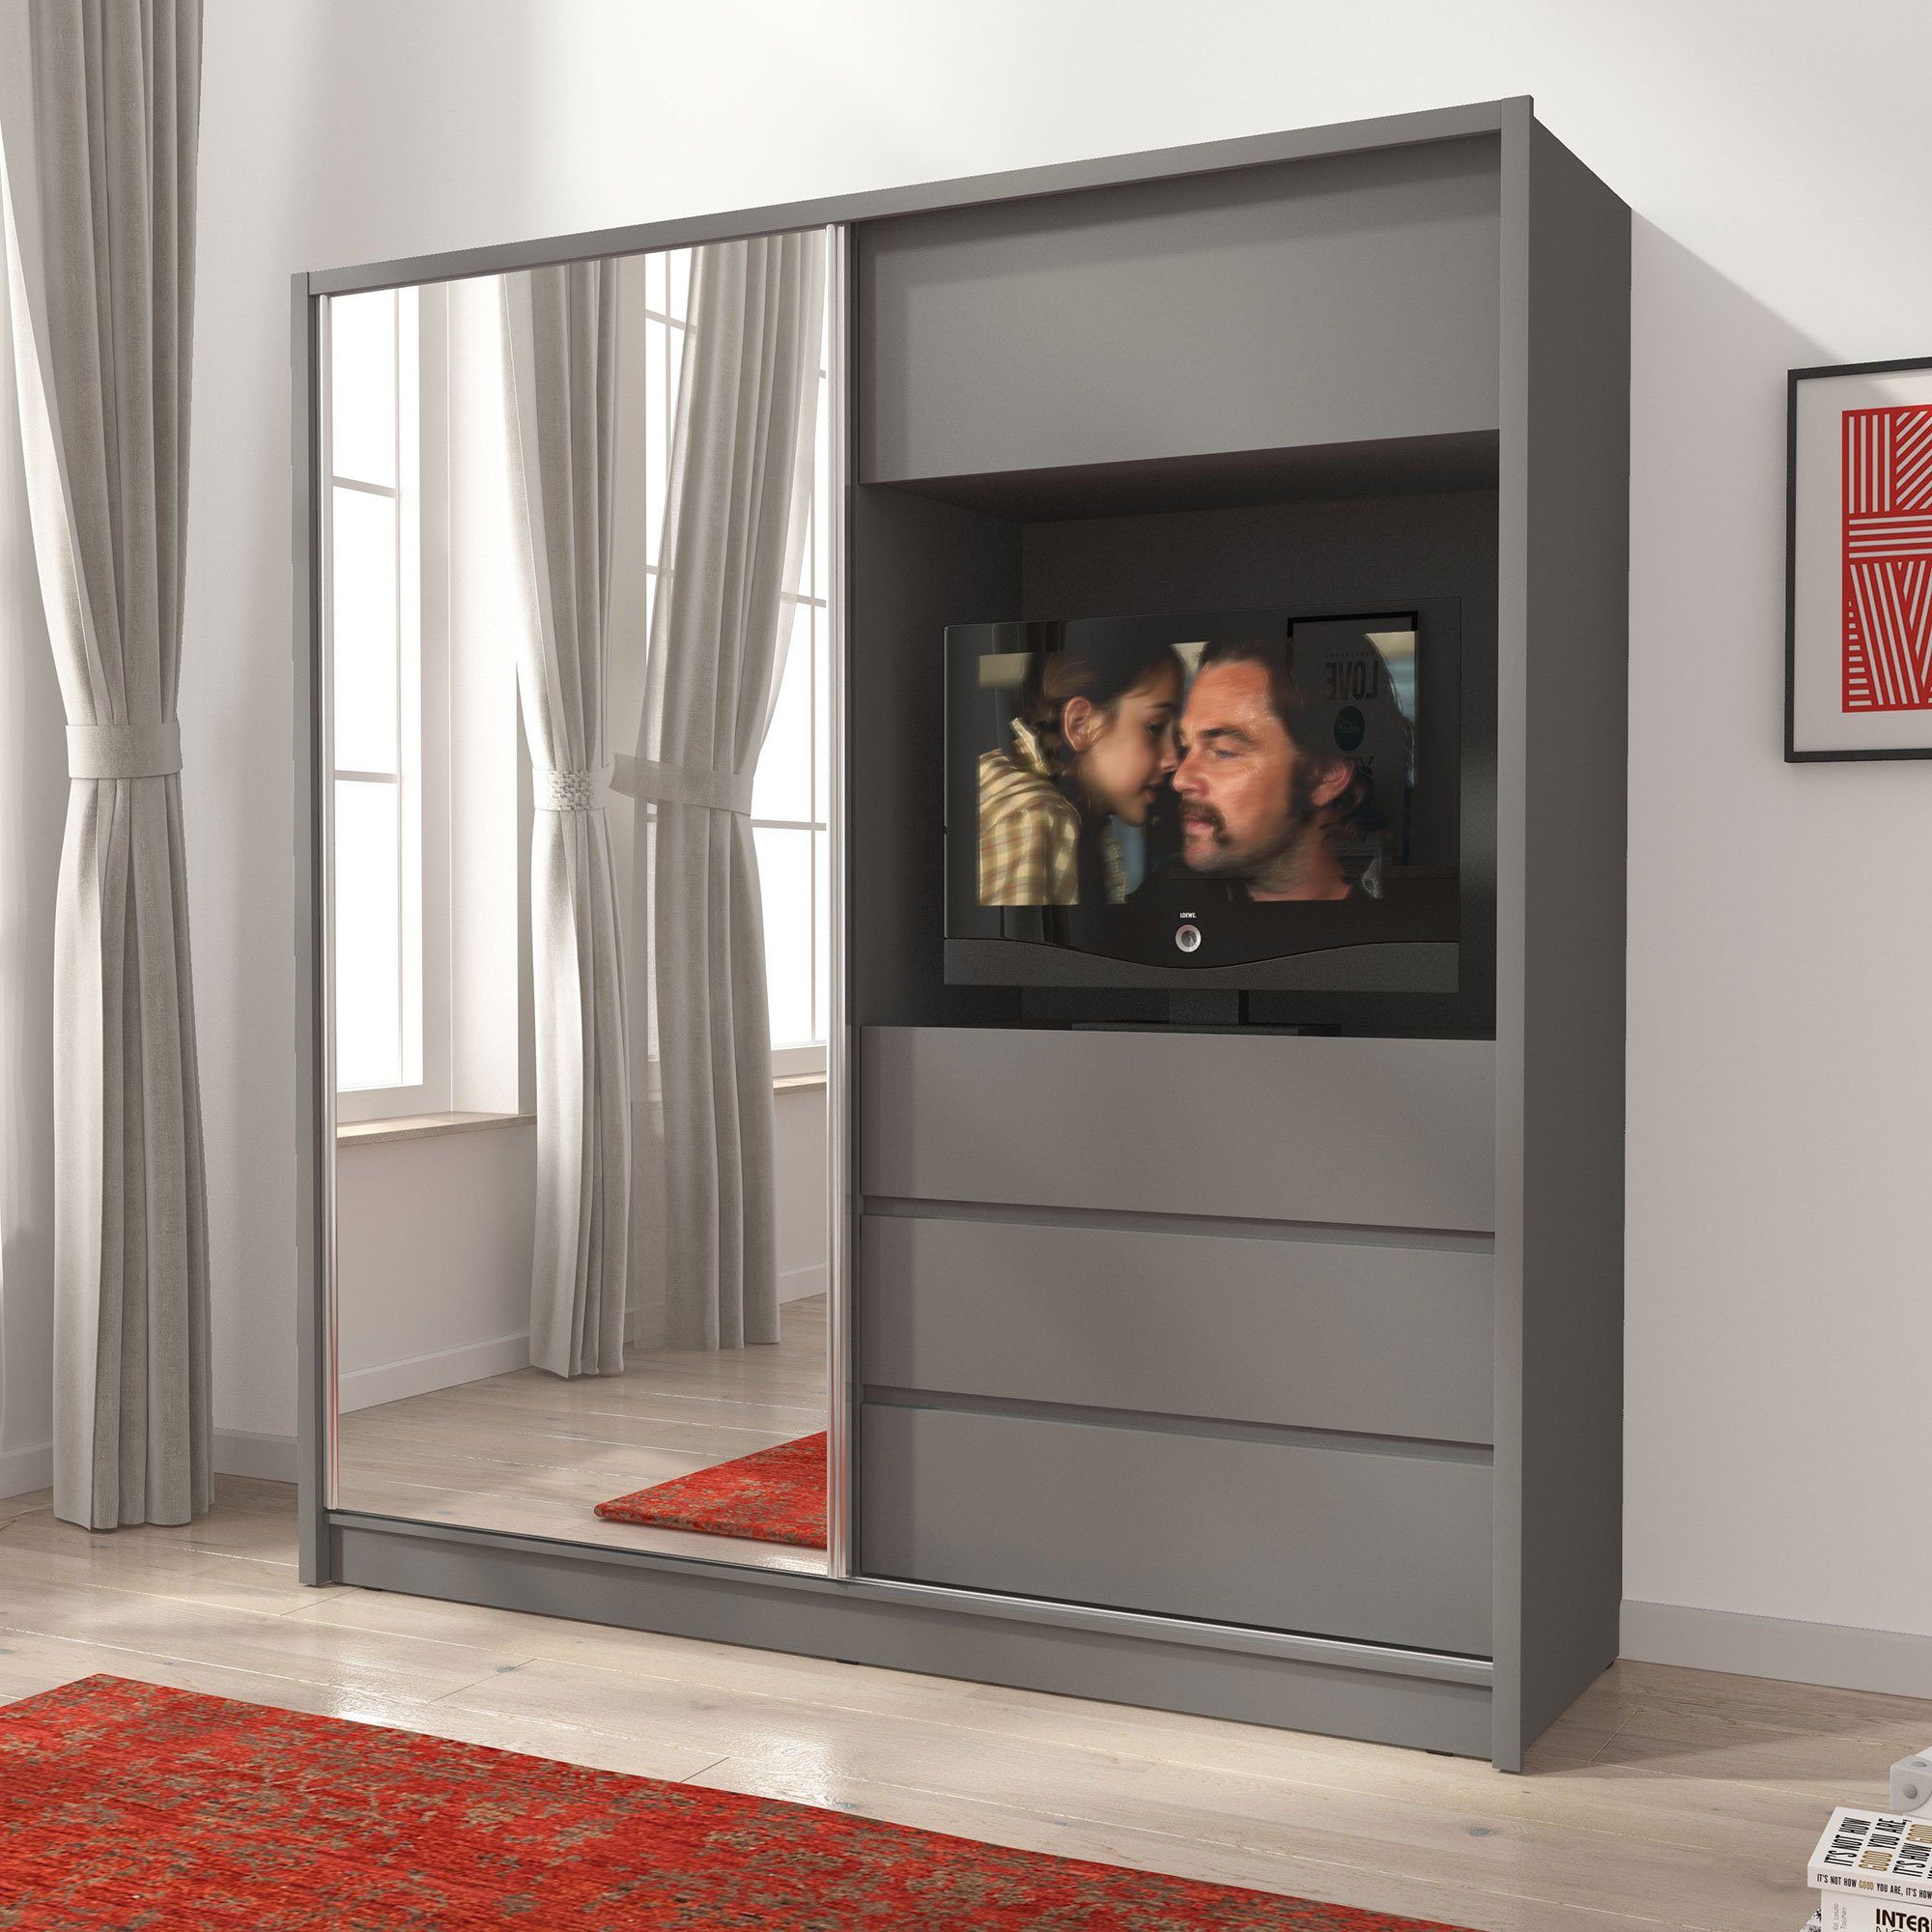 Luxusbetten24 Baidani Kleiderschrank Schrank Cosmo mit TV Vorrichtung Grau